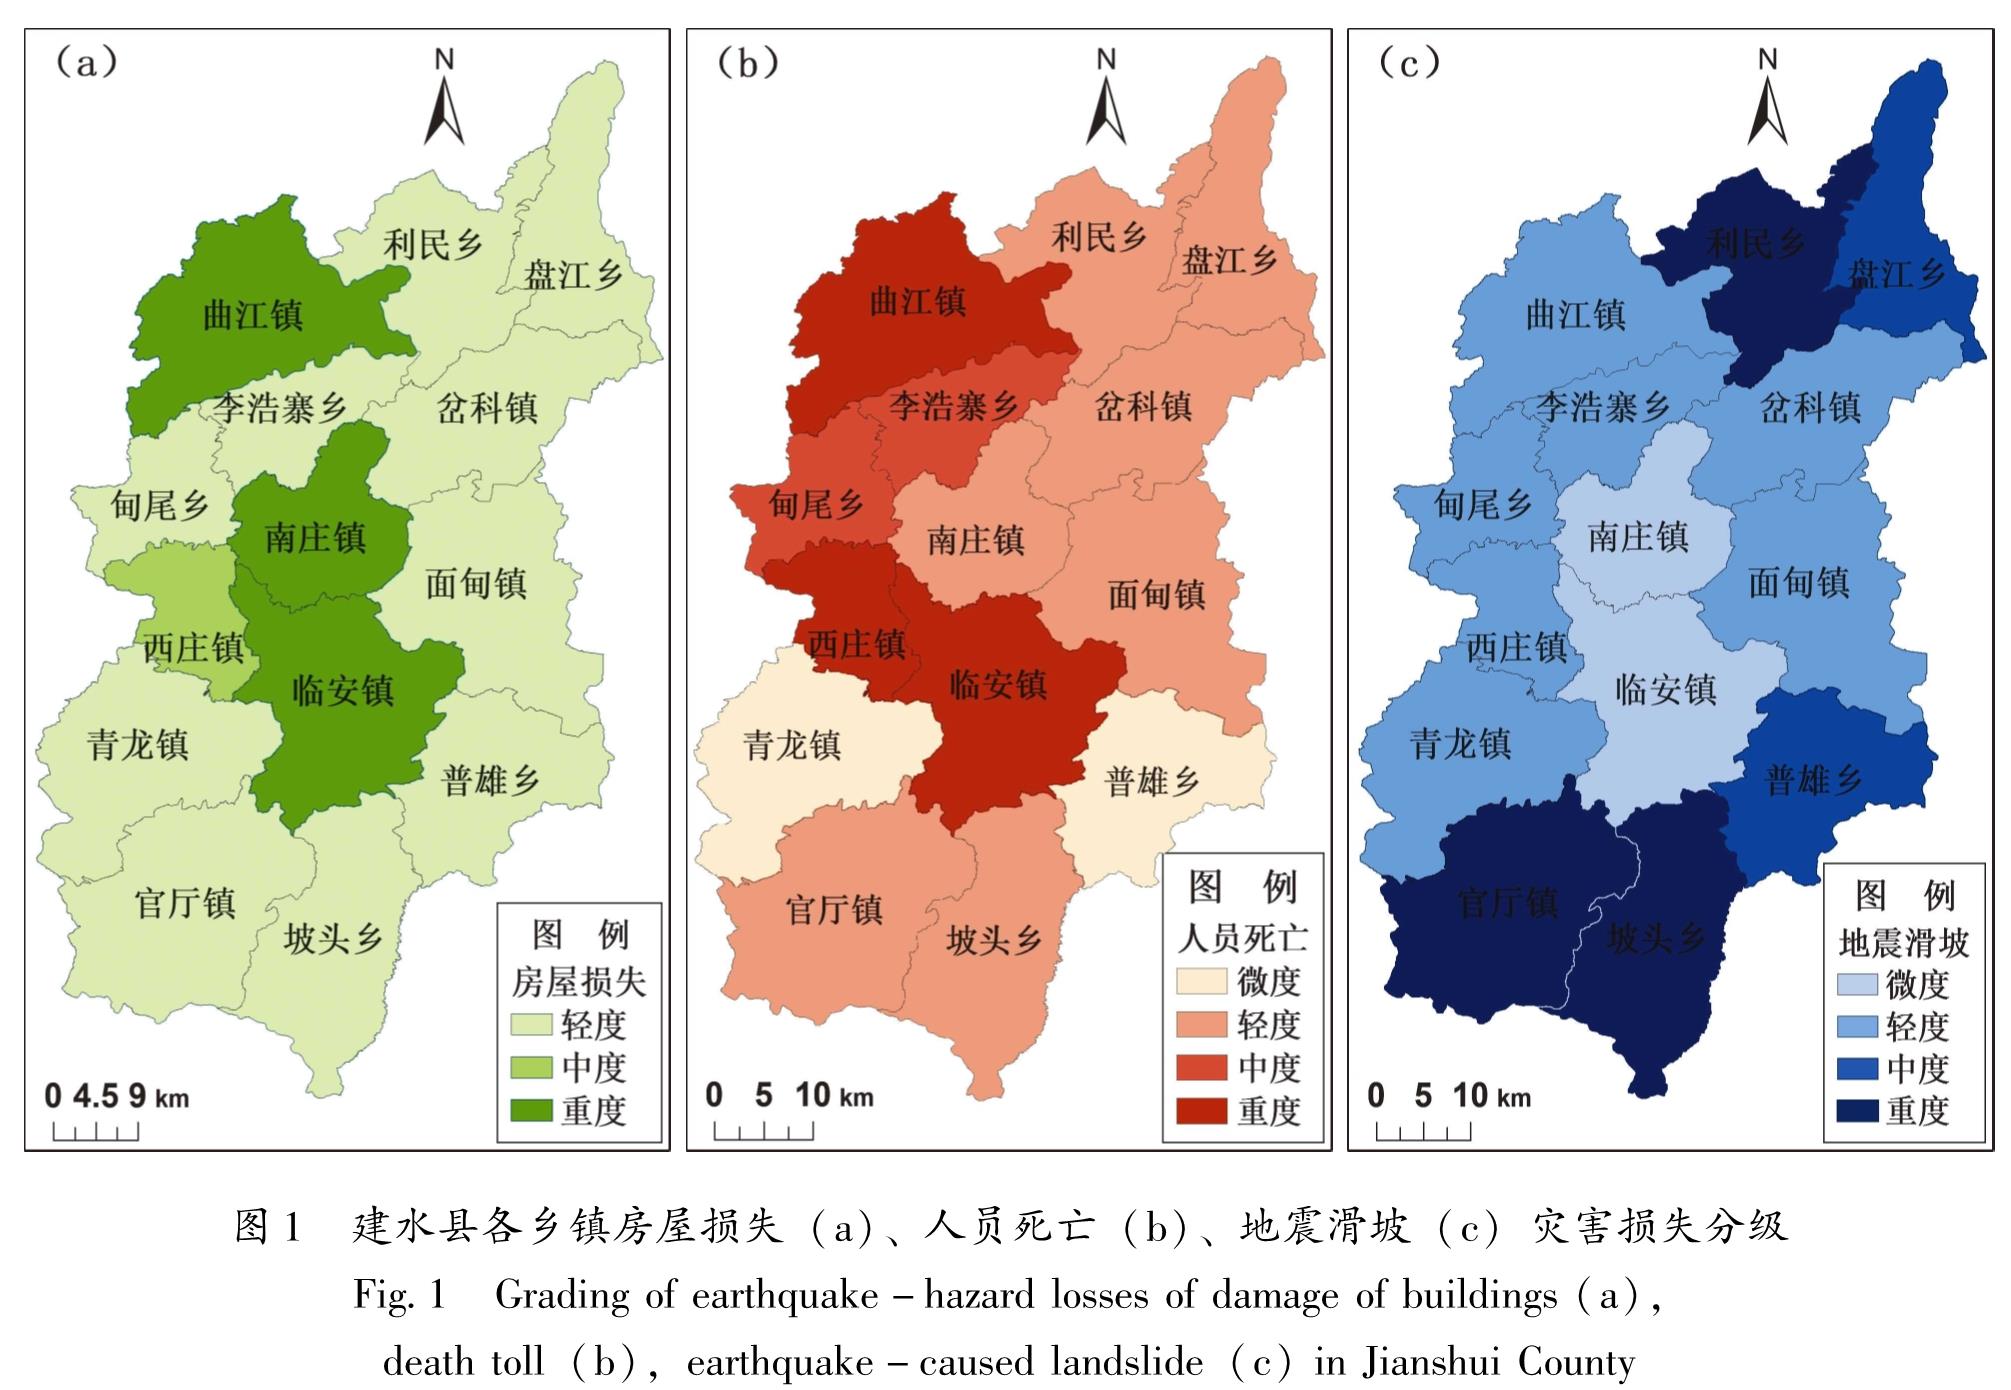 图1 建水县各乡镇房屋损失(a)、人员死亡(b)、地震滑坡(c)灾害损失分级<br/>Fig.1 Grading of earthquake-hazard losses of damage of buildings(a),death toll(b),earthquake-caused landslide(c)in Jianshui County